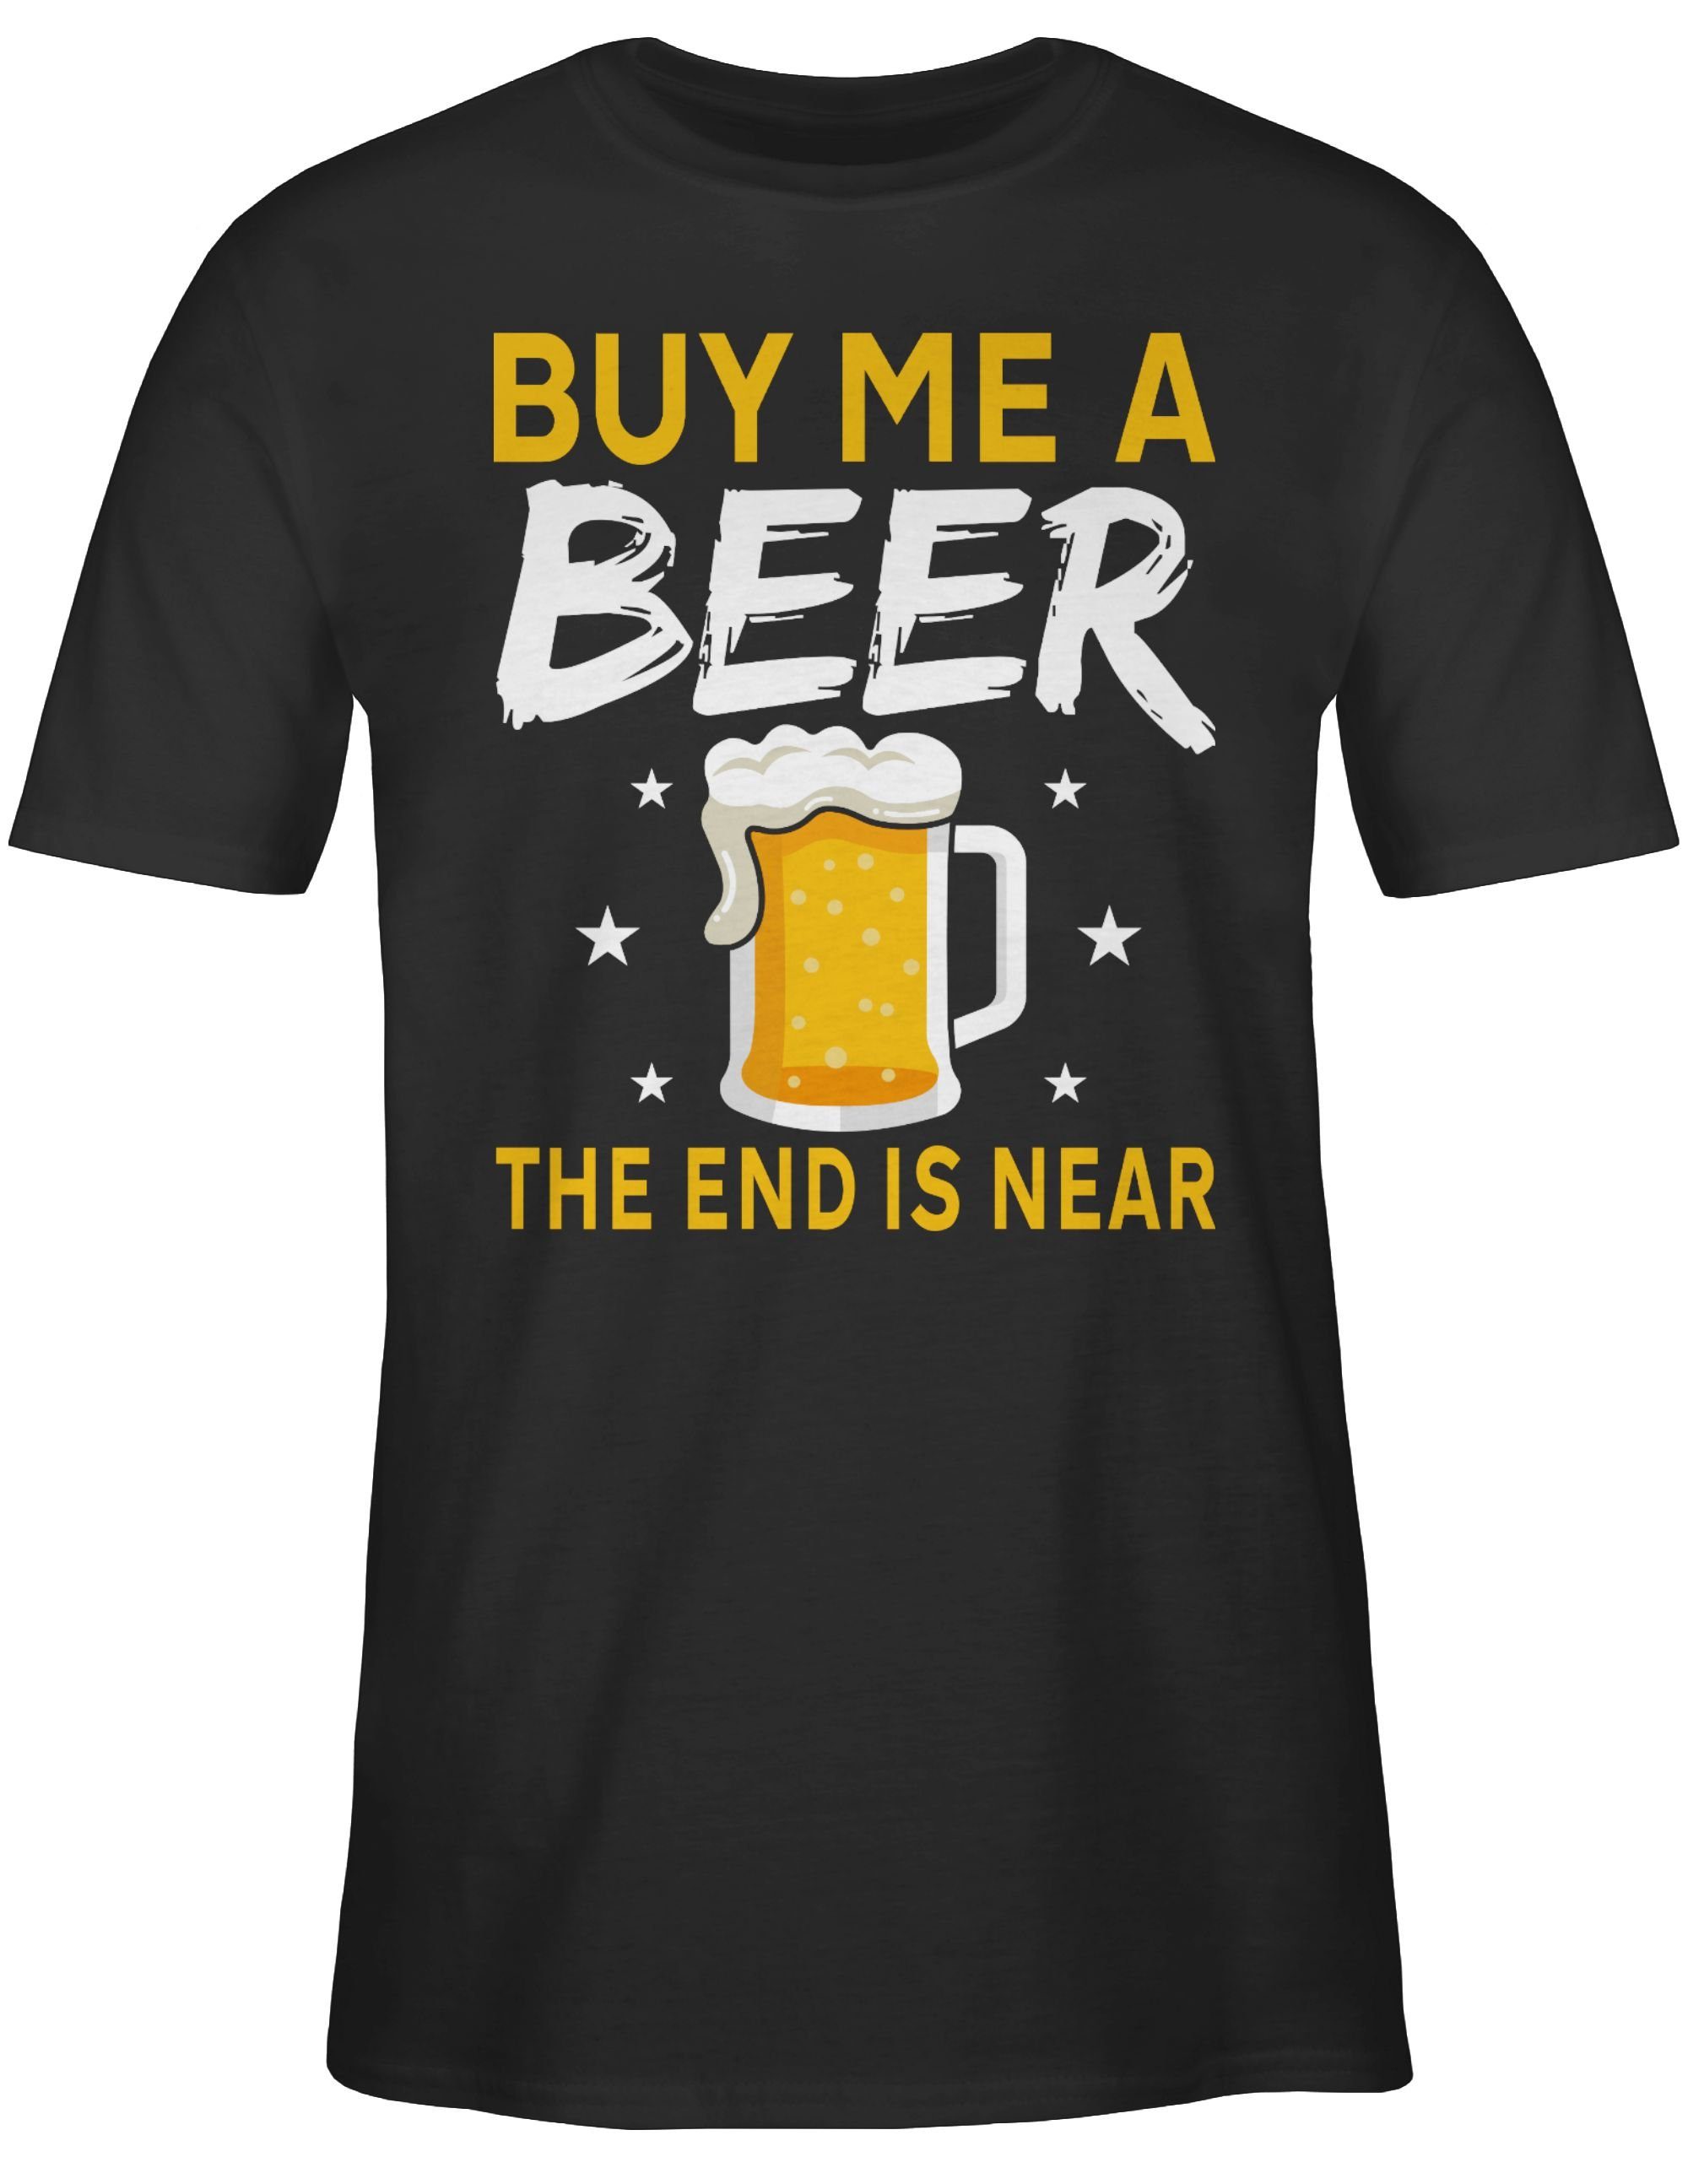 Shirtracer T-Shirt Buy beer end near Bier is me JGA a the 01 Schwarz Männer Sterne